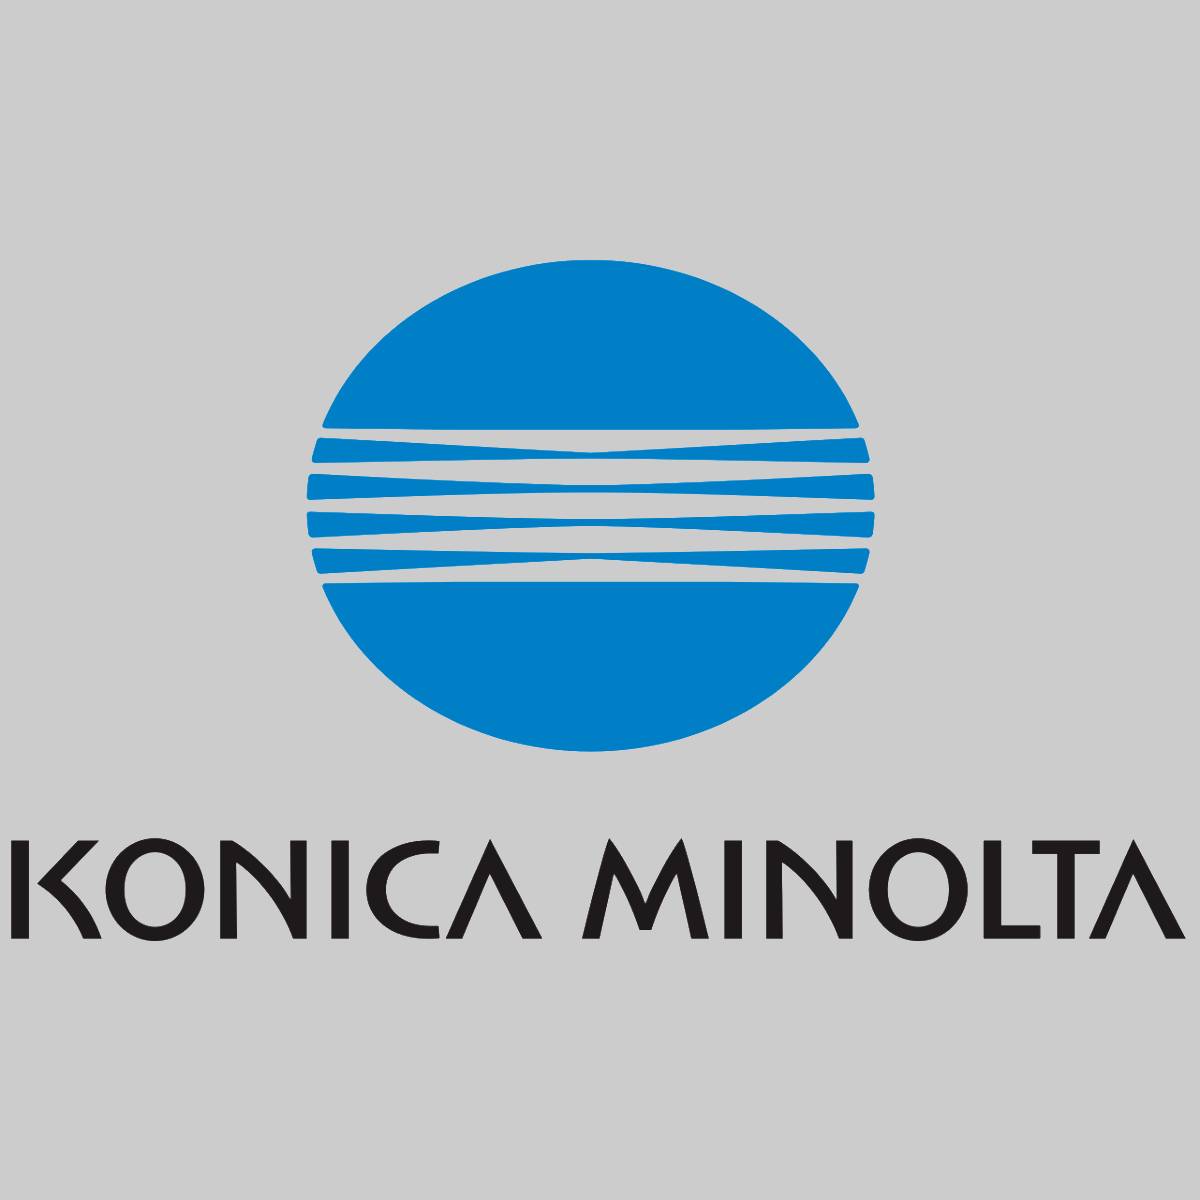 "Original Konica Minolta TN620C Toner Cyan A3VX45J for Bizhub PRO C1060L NEW OVP